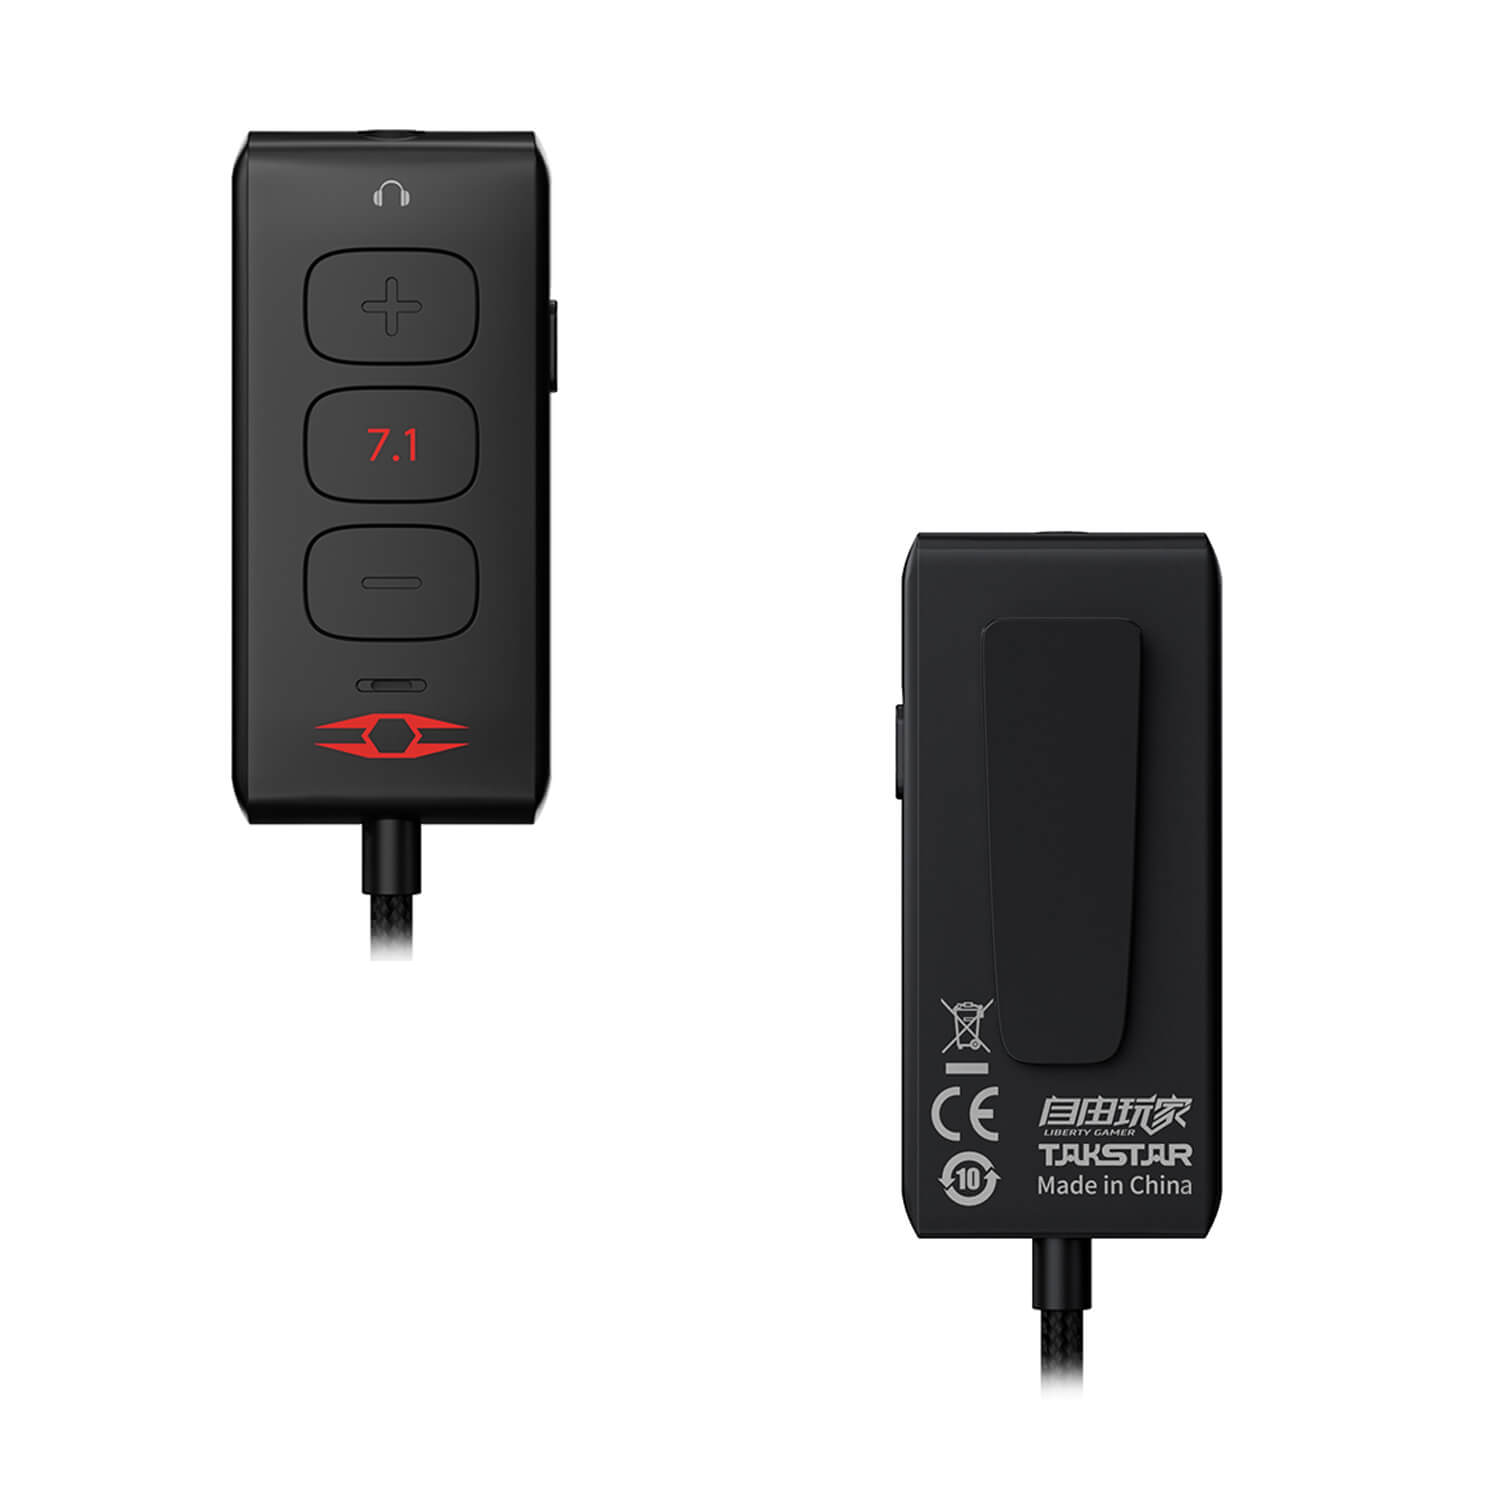 Звуковая карта Takstar GC220 SB 48KHz/24bit, Virtual 7.1, USB